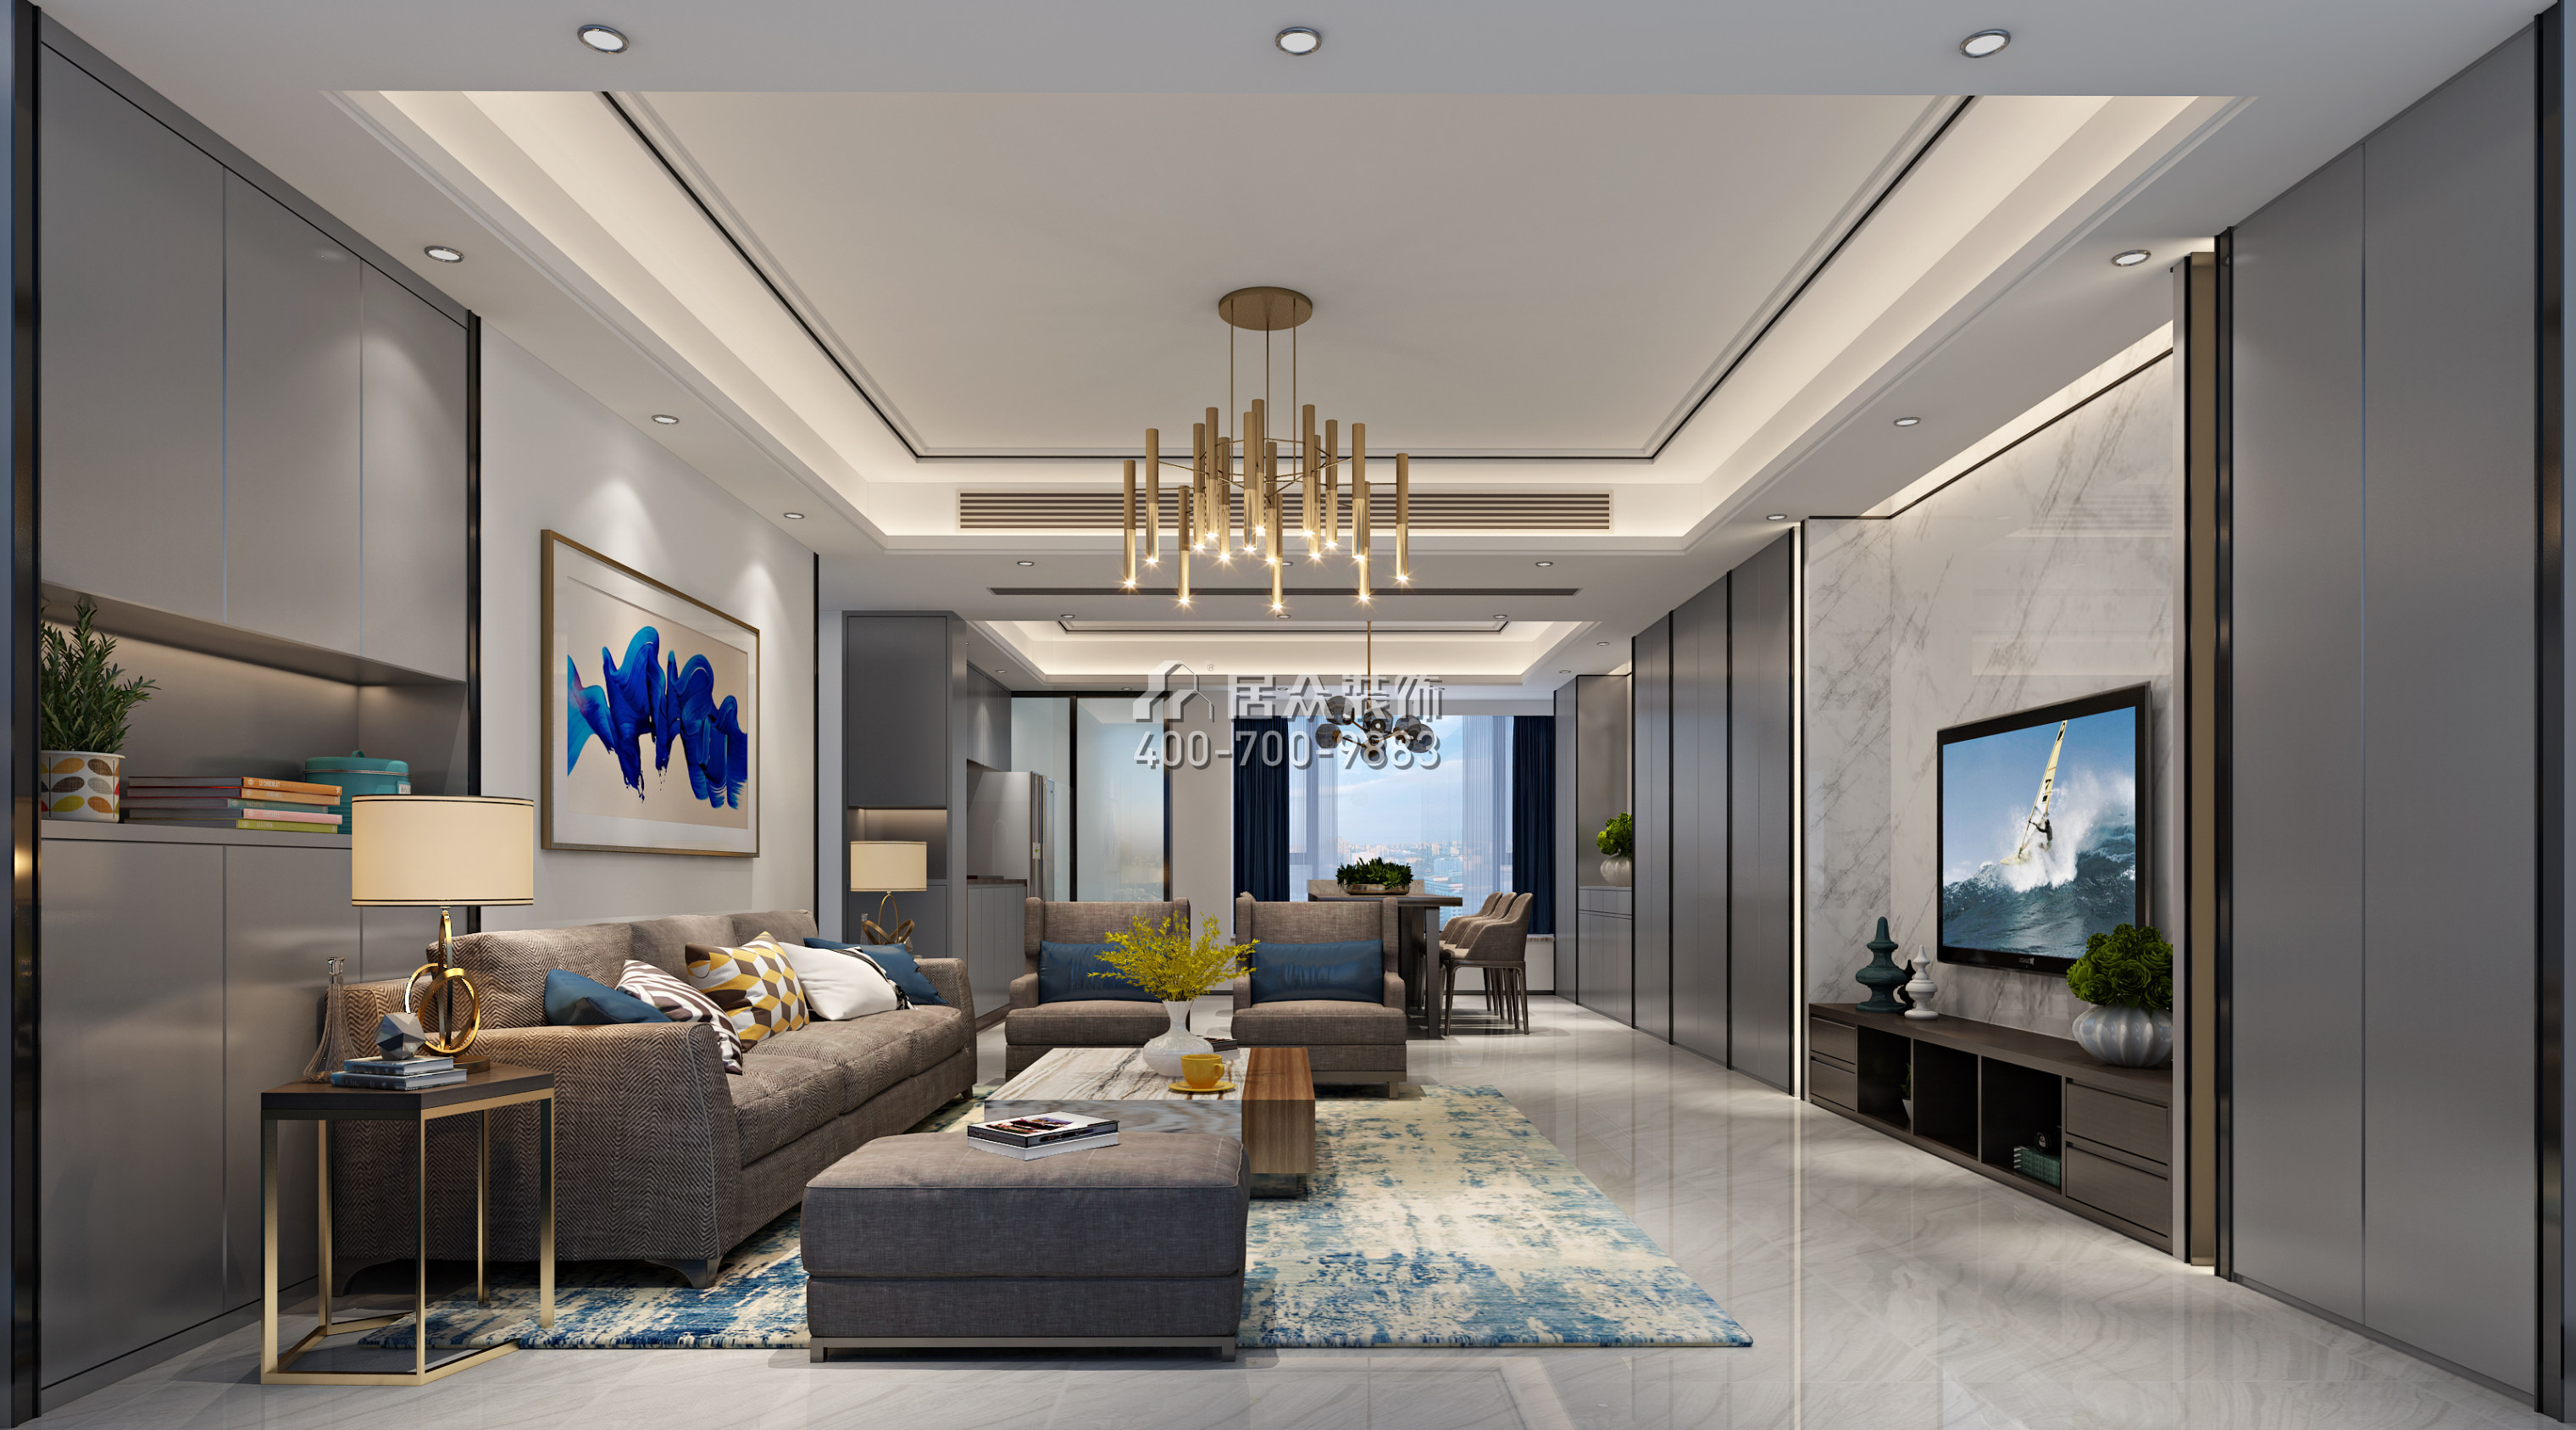 香山美墅四期169平方米現代簡約風格平層戶型客廳裝修效果圖